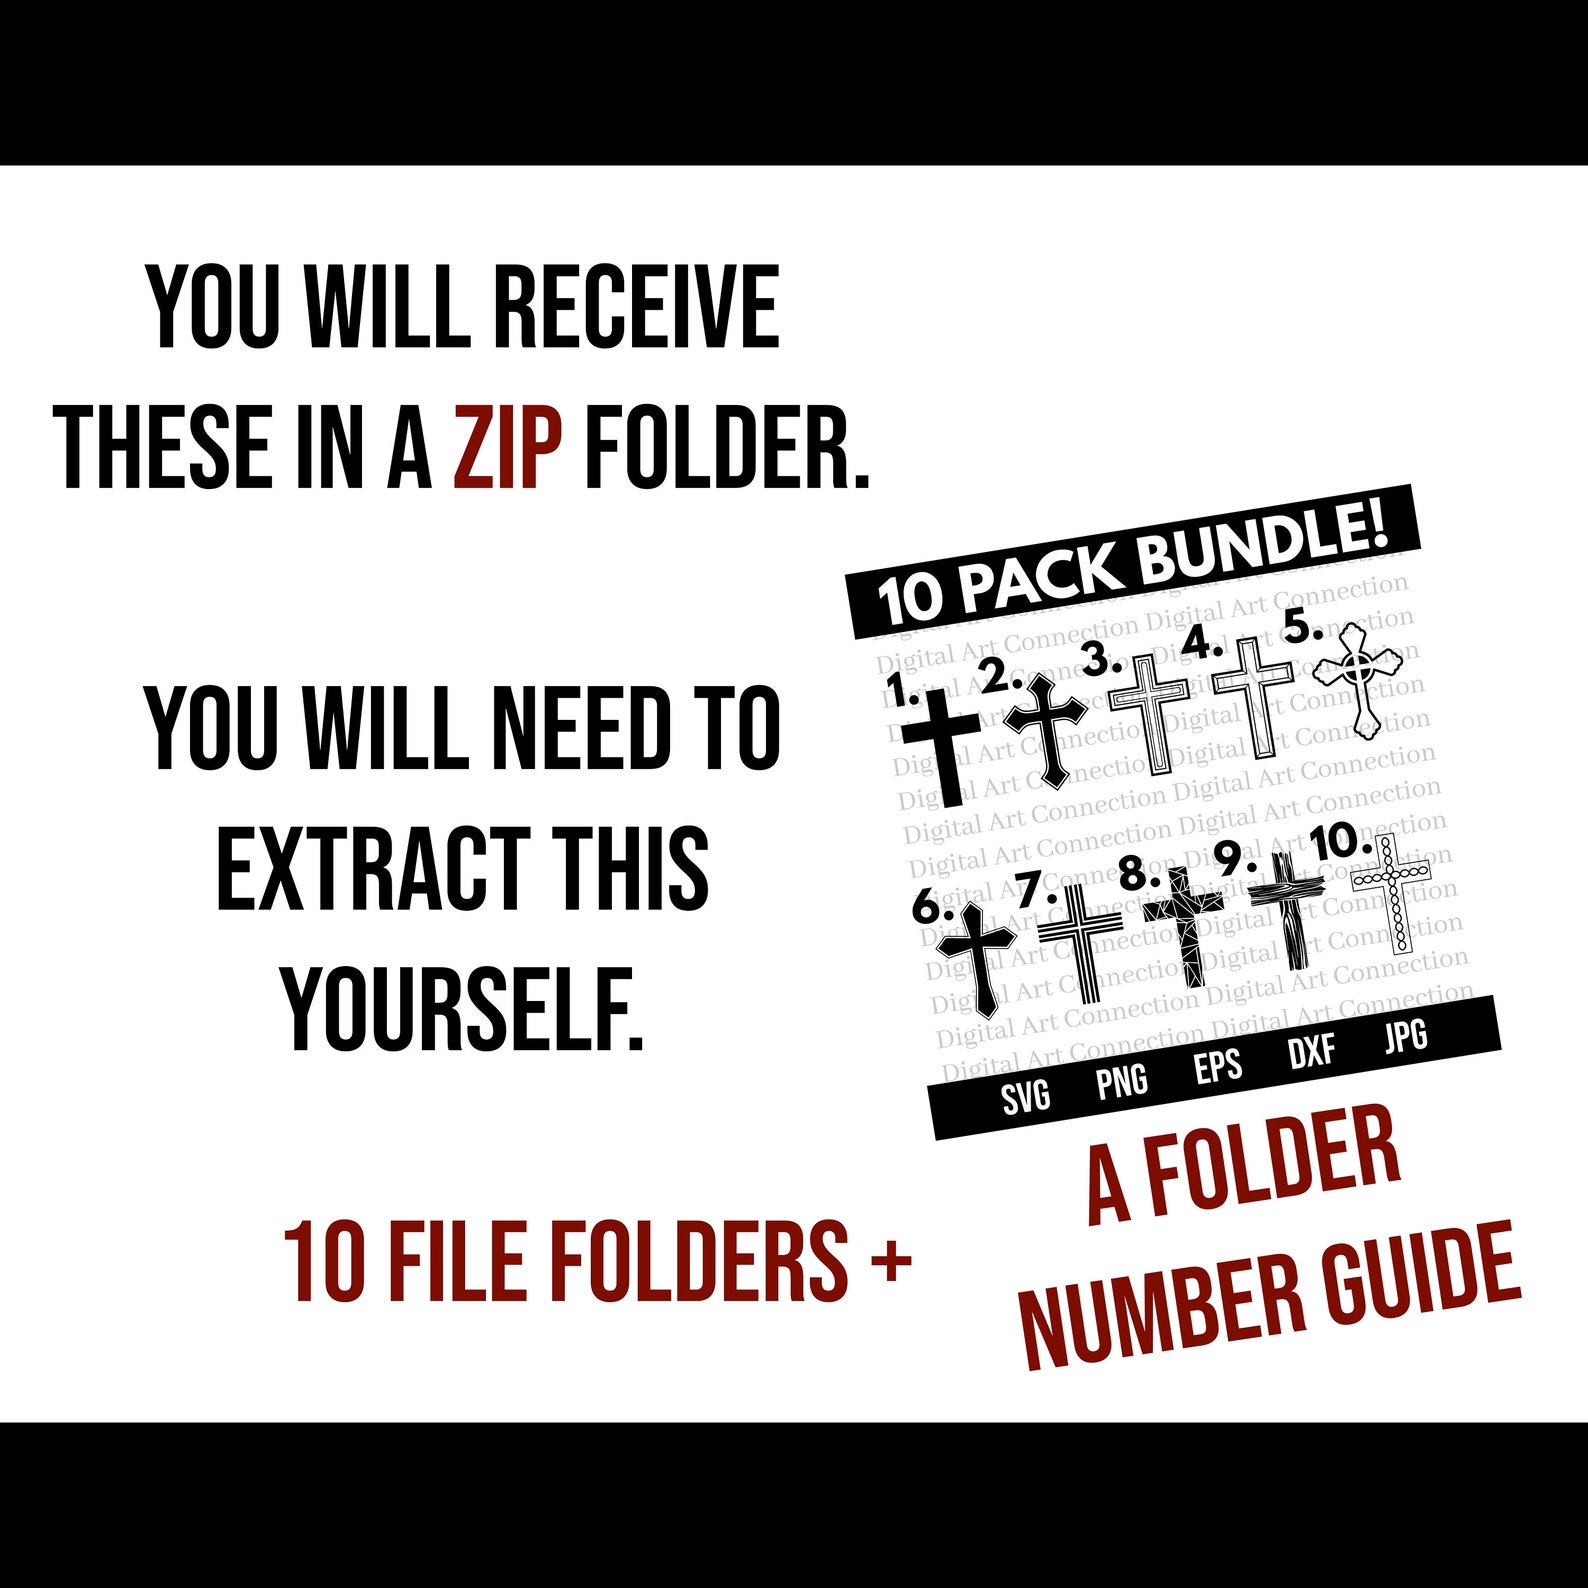 A folder number guide.